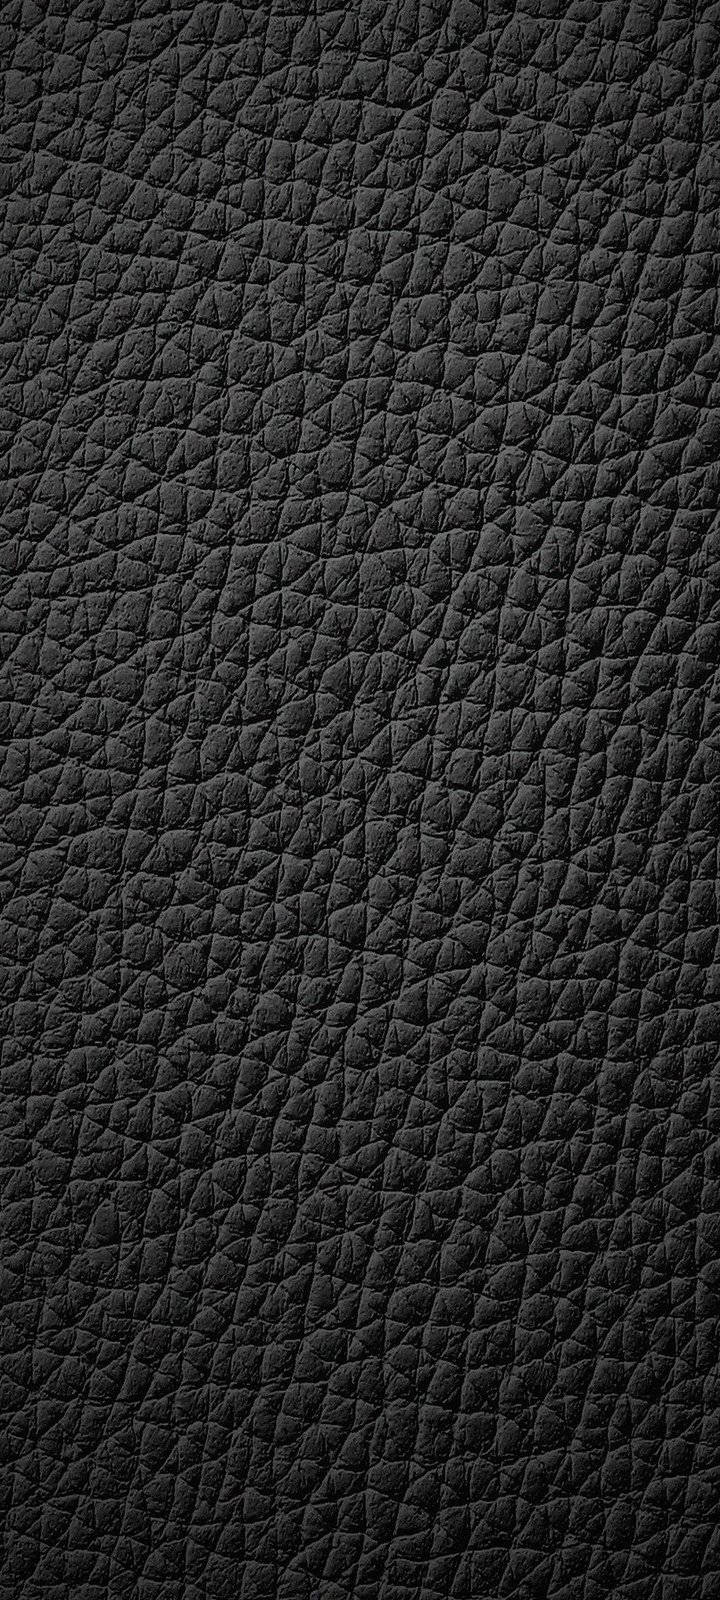 Vivo Y20 Black Leather Texture Wallpaper